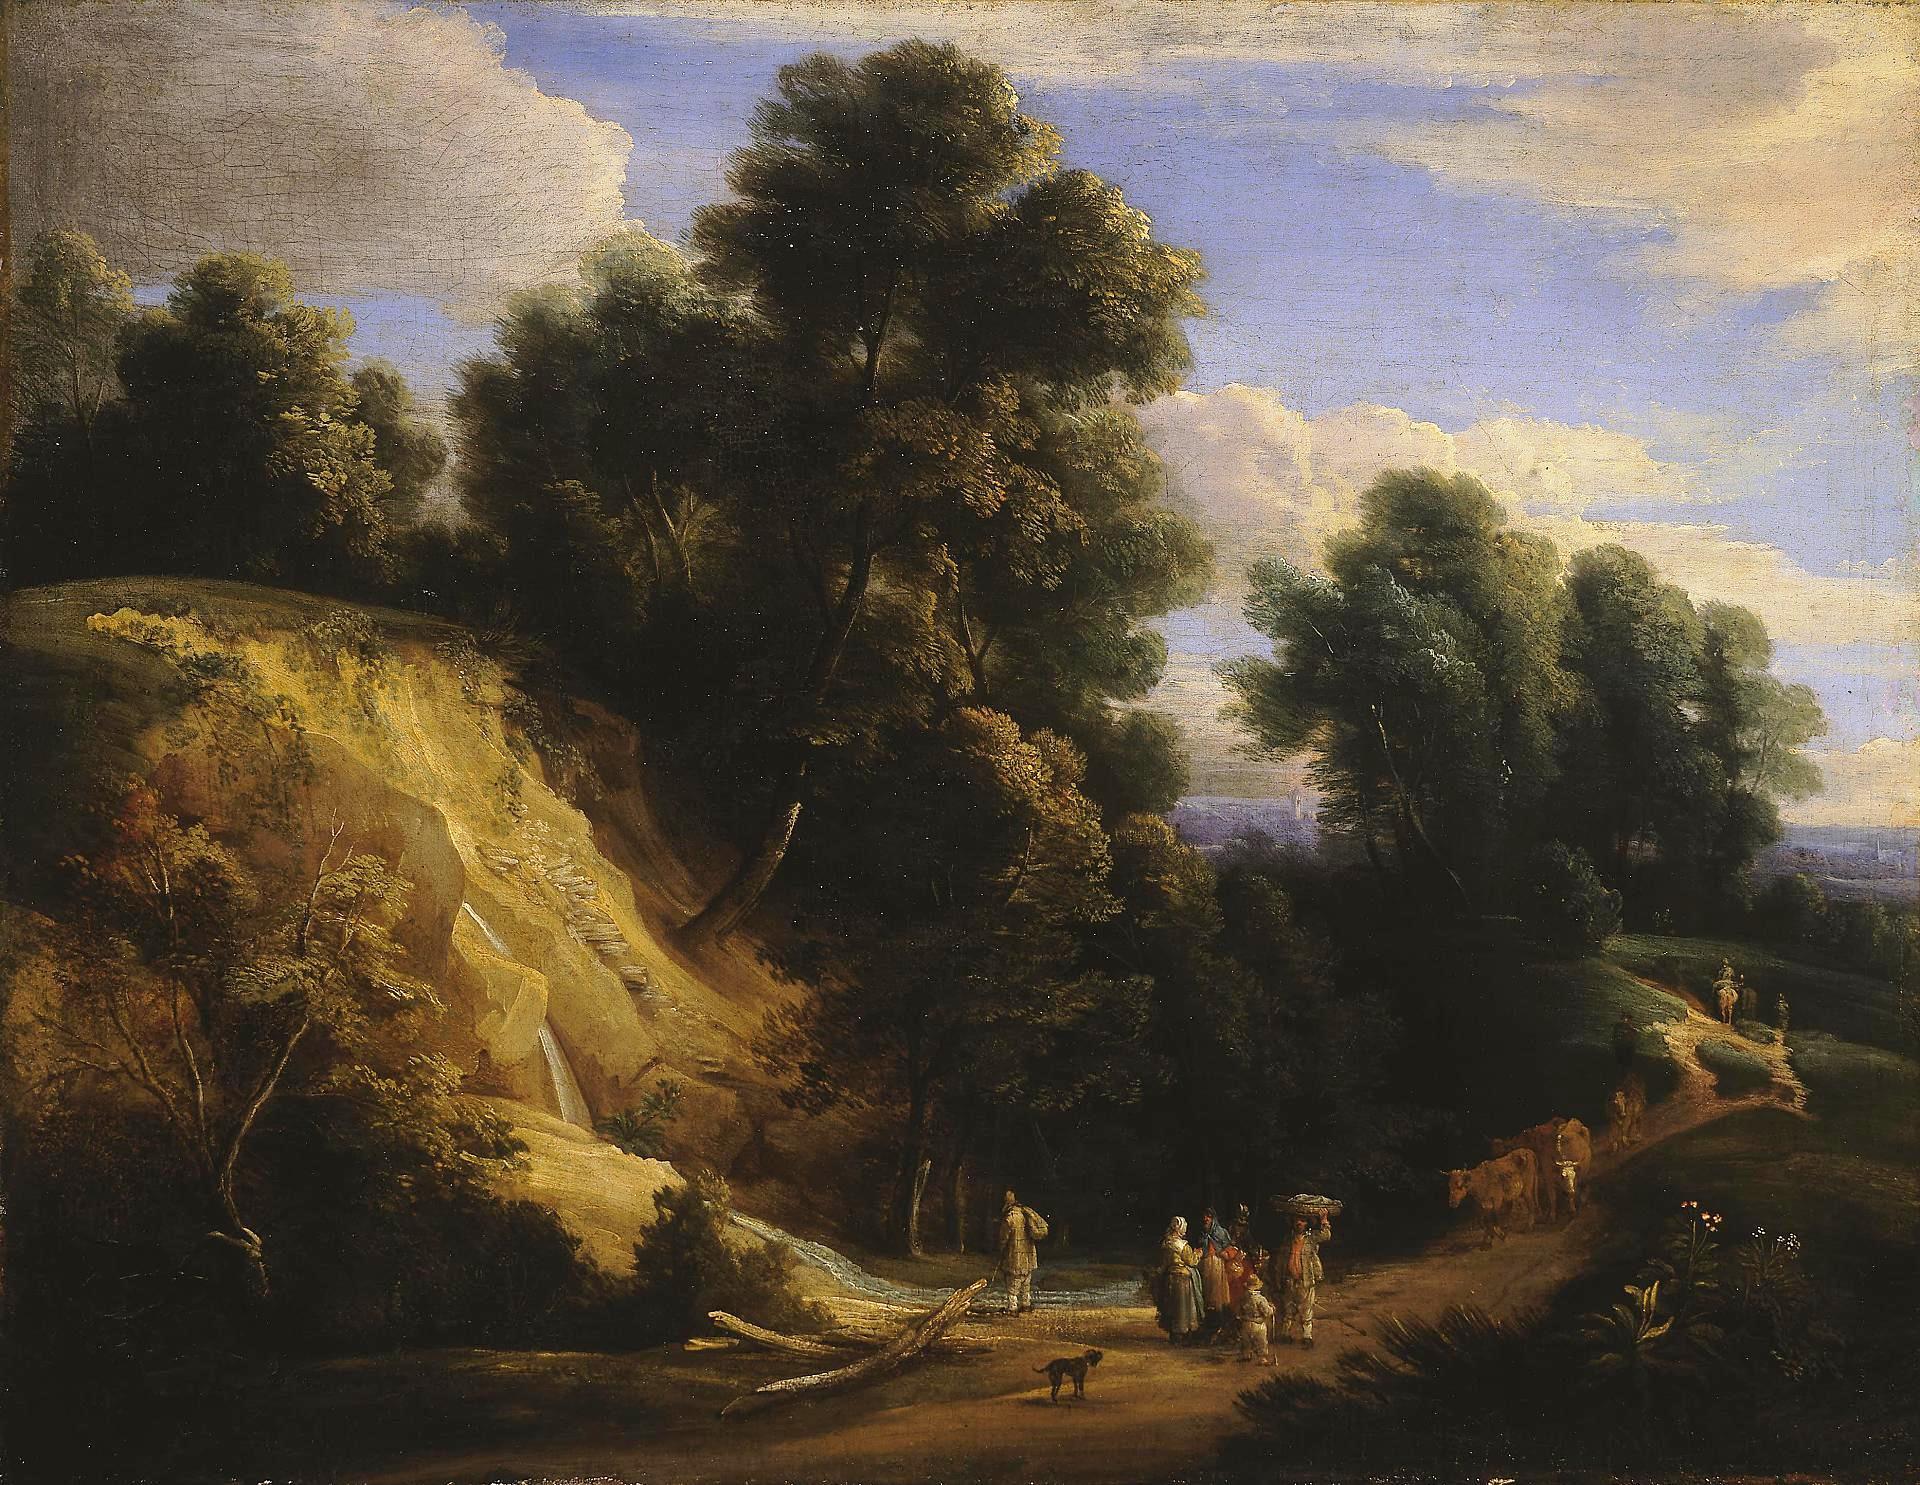 Жак д'Артуа, Питер Баут. "Пейзаж". Между 1678-1686. Эрмитаж, Санкт-Петербург.